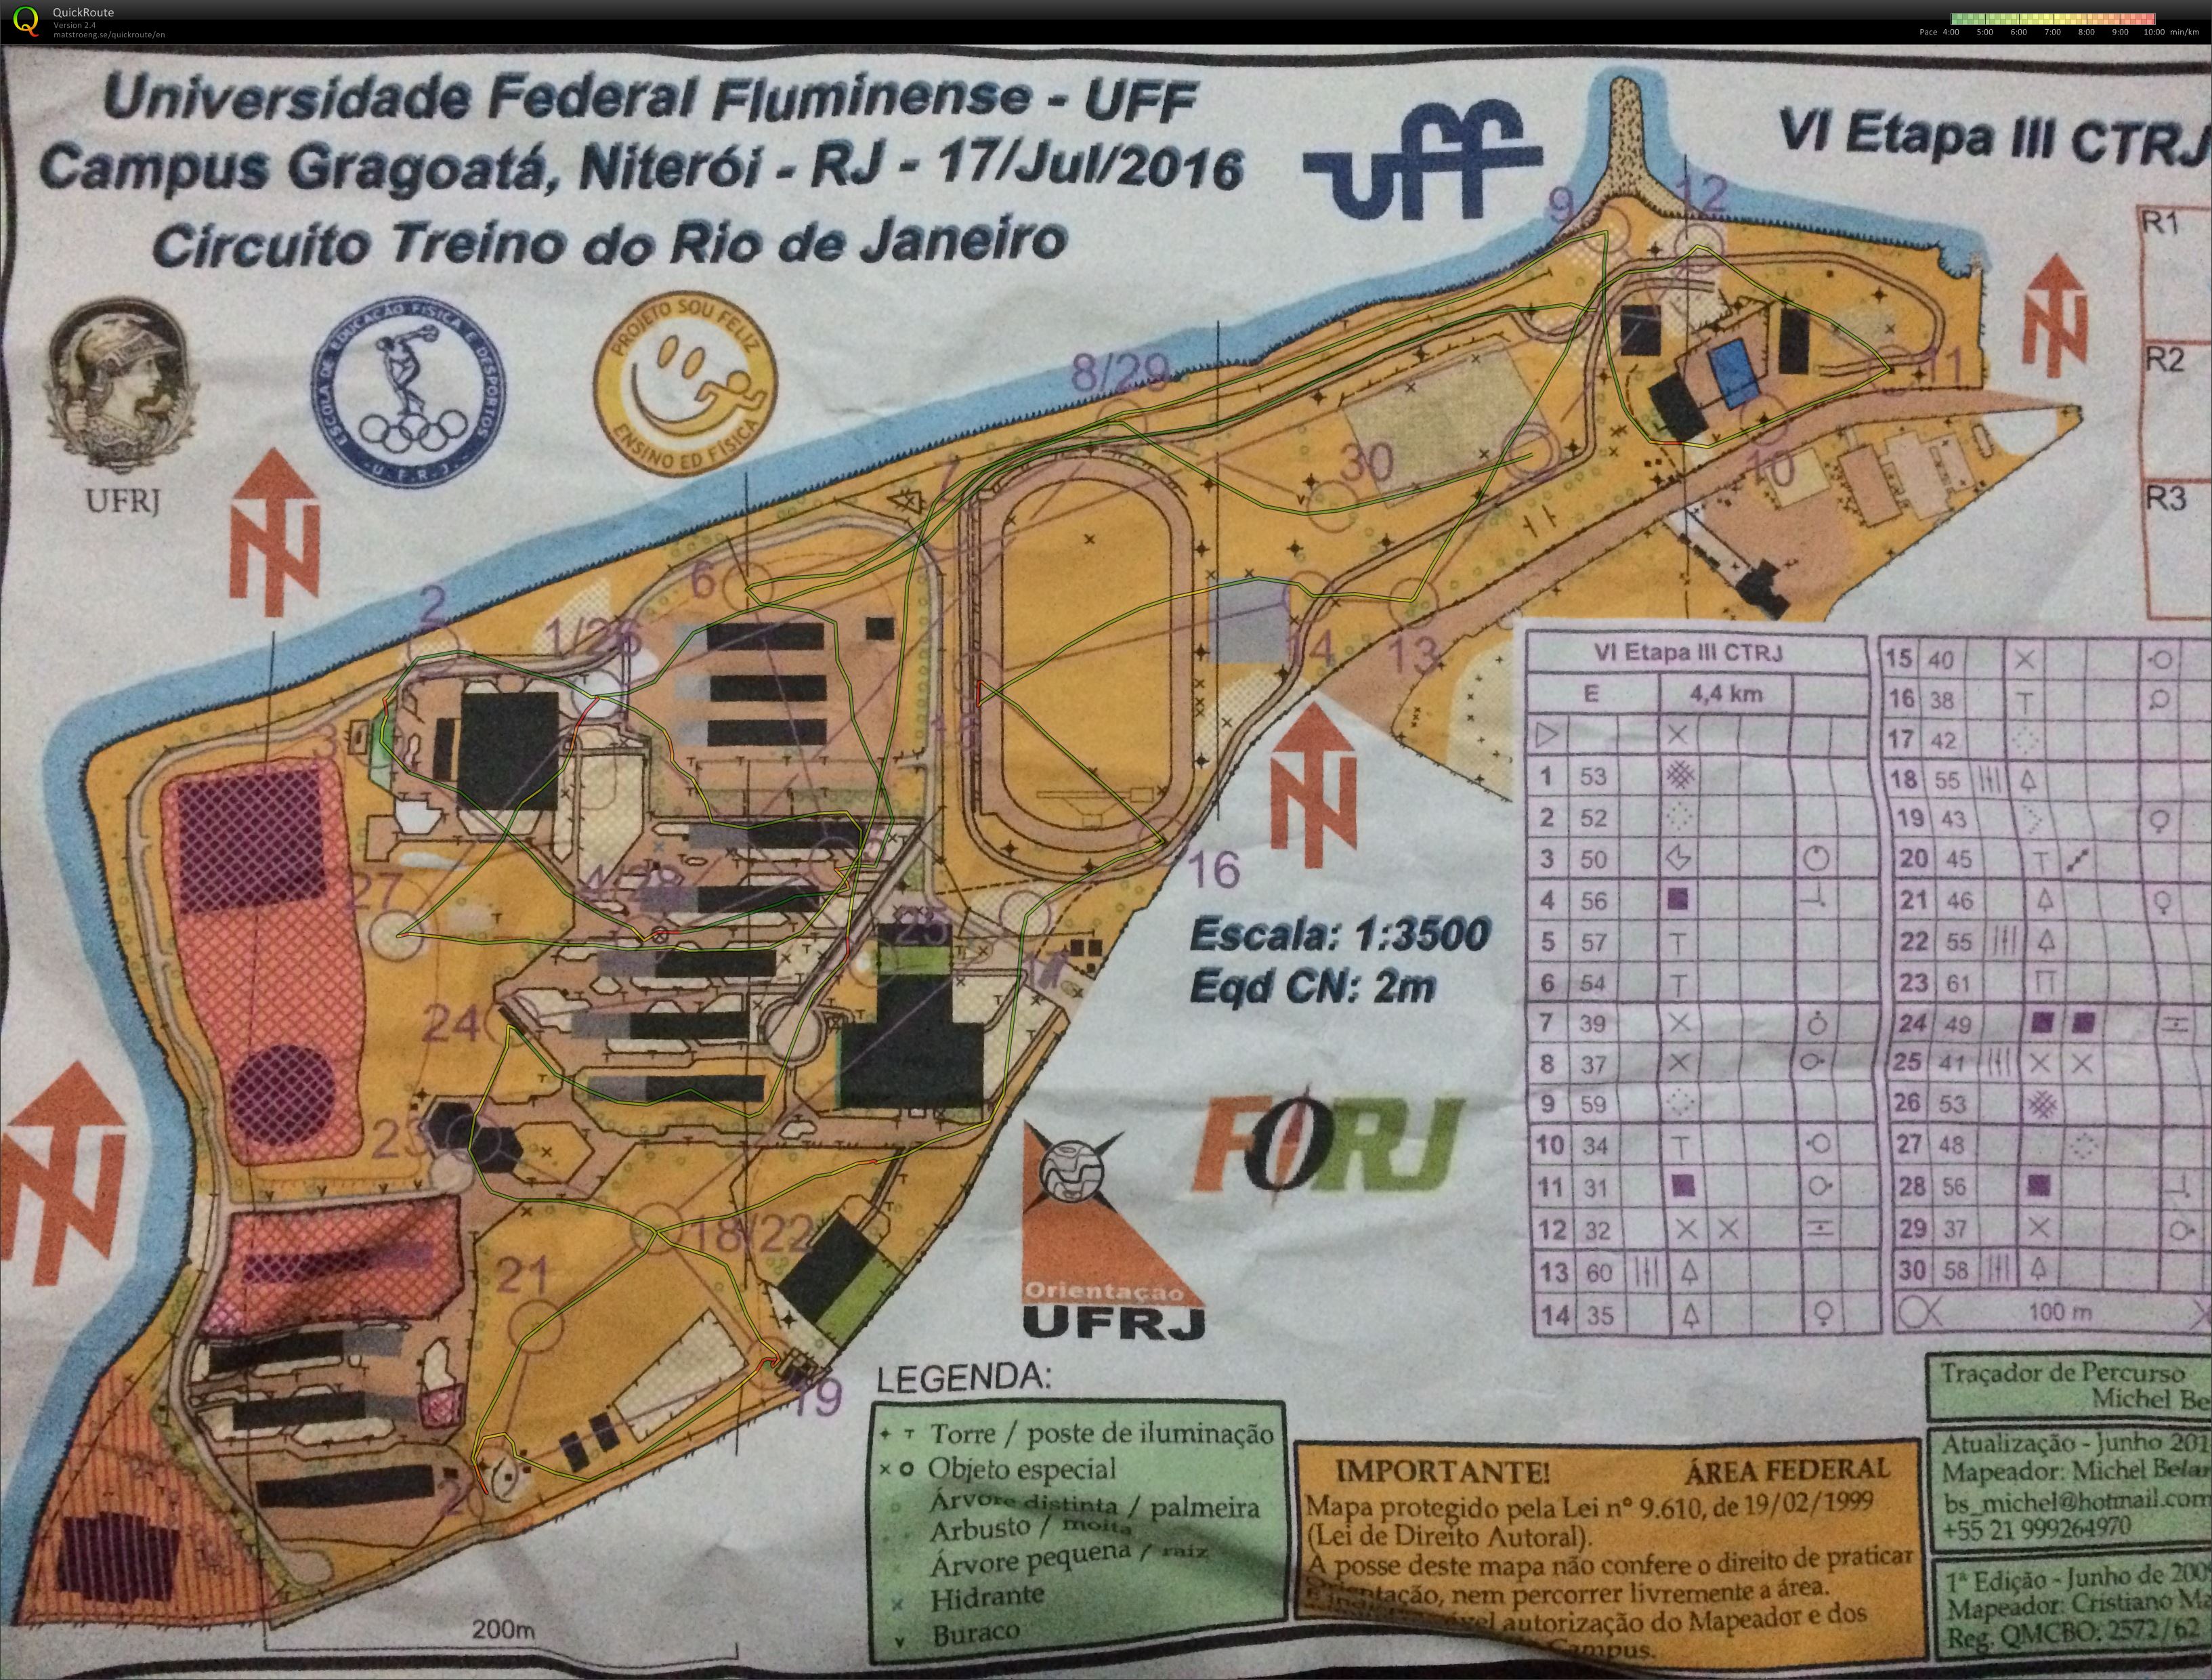 VI Etapa III, Circuito Treino do Rio de Janeiro (17.07.2016)